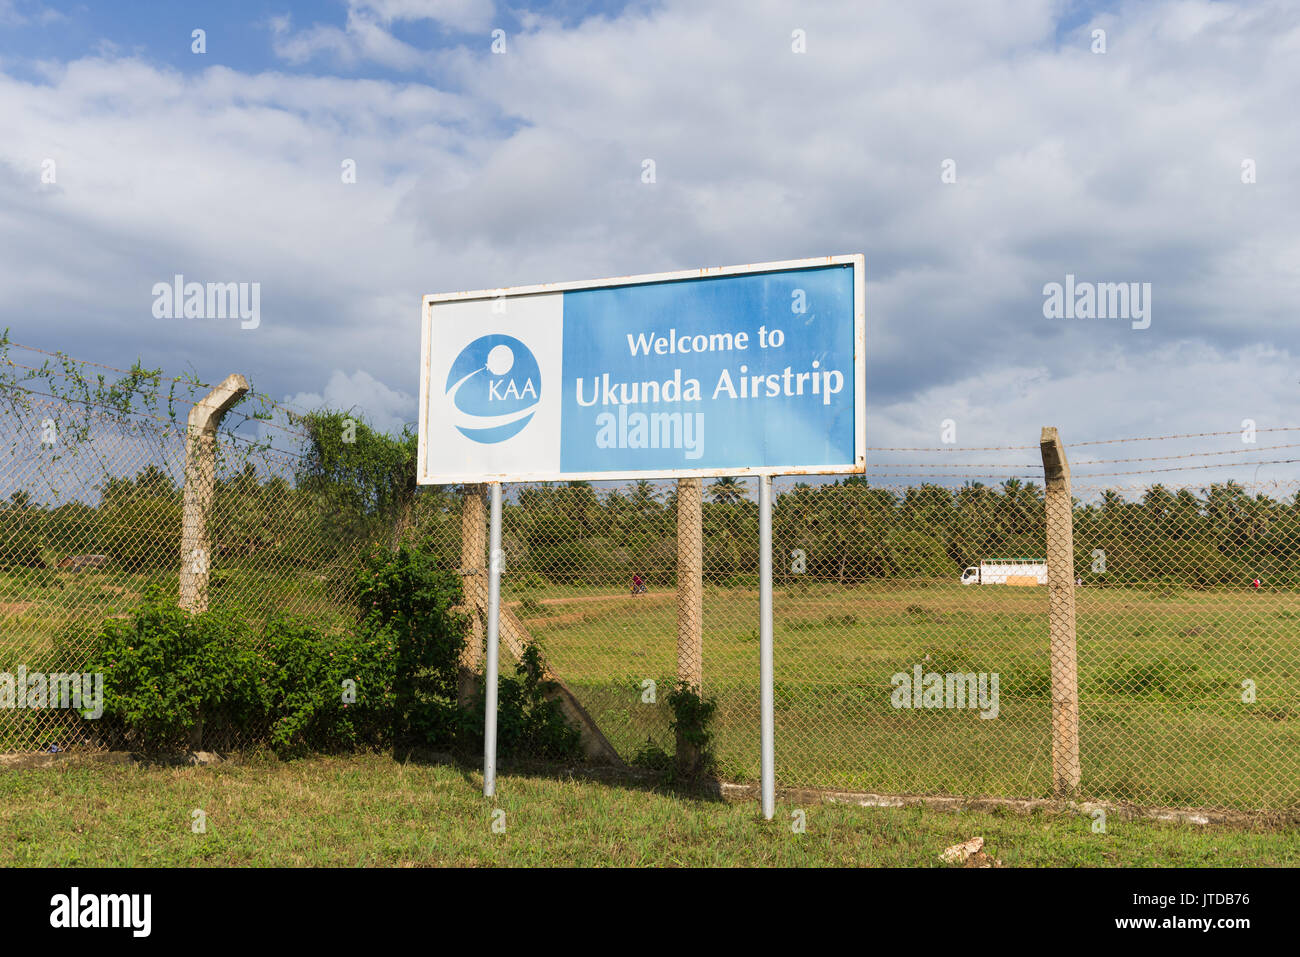 Welcom to Ukunda airstrip airport sign, Ukunda, Kenya Stock Photo